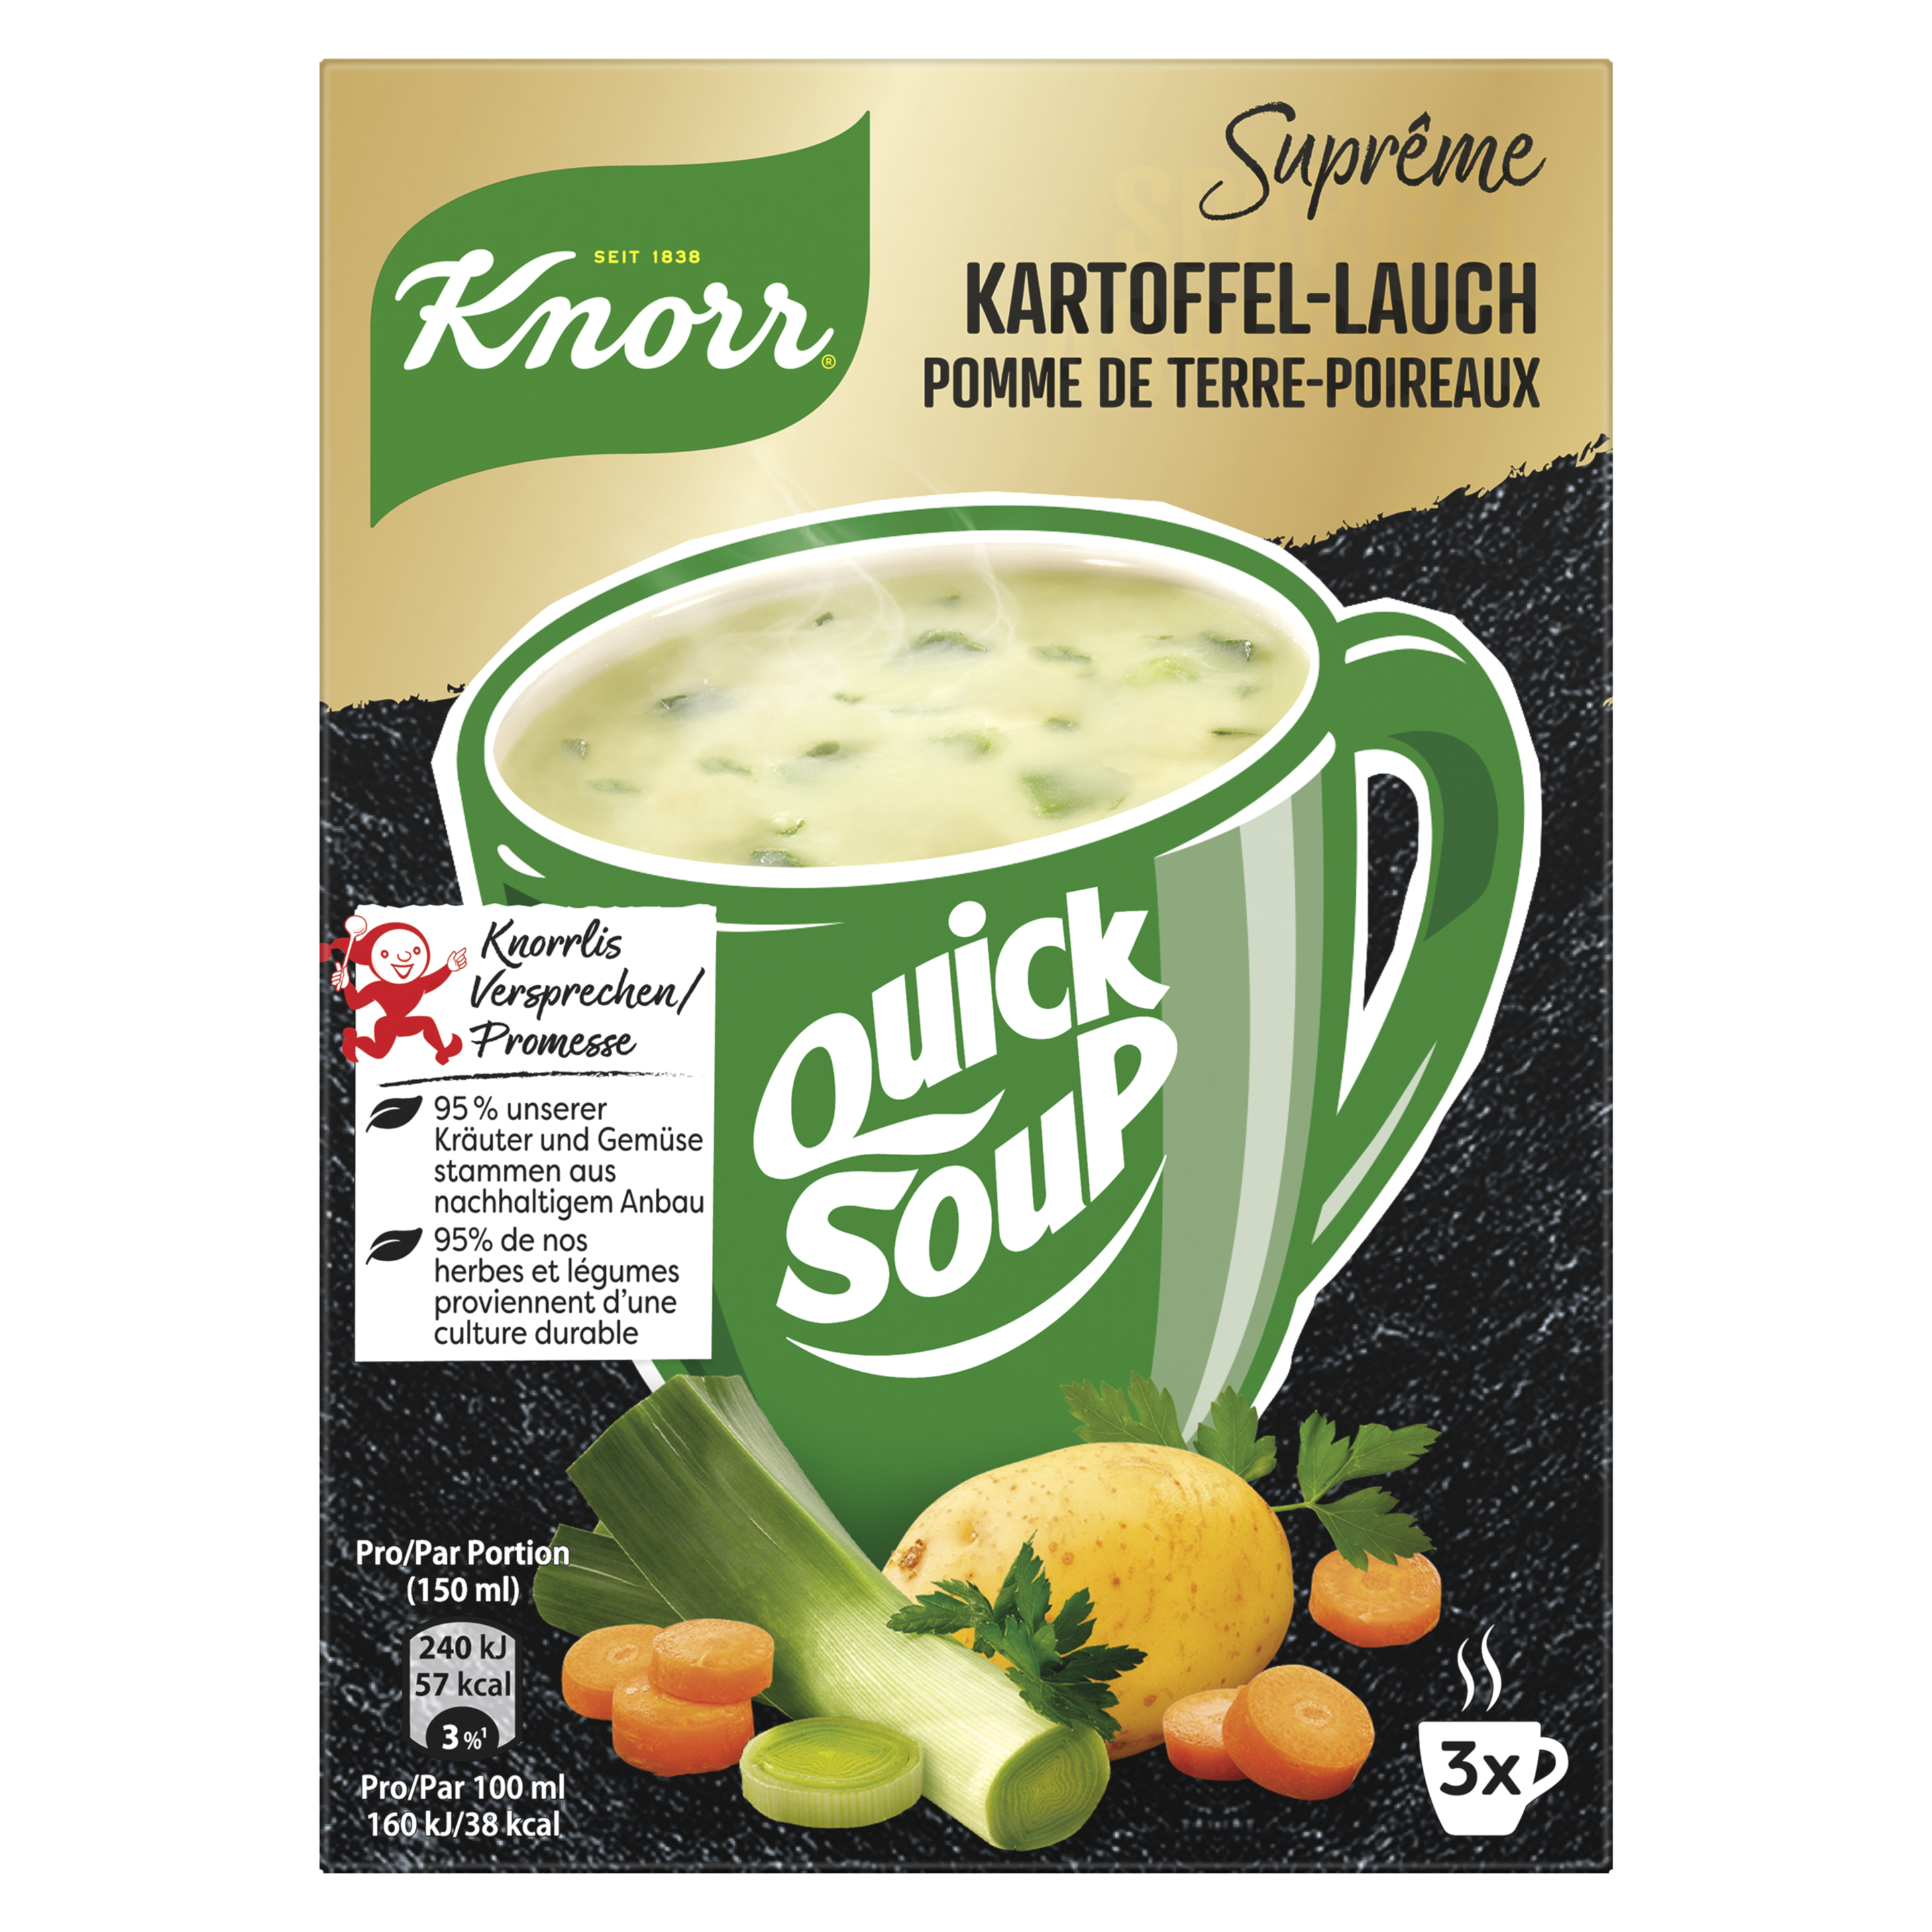 KNORR Suprême quick soup Pomme de terre-poireaux emballage 3 x 1 portion